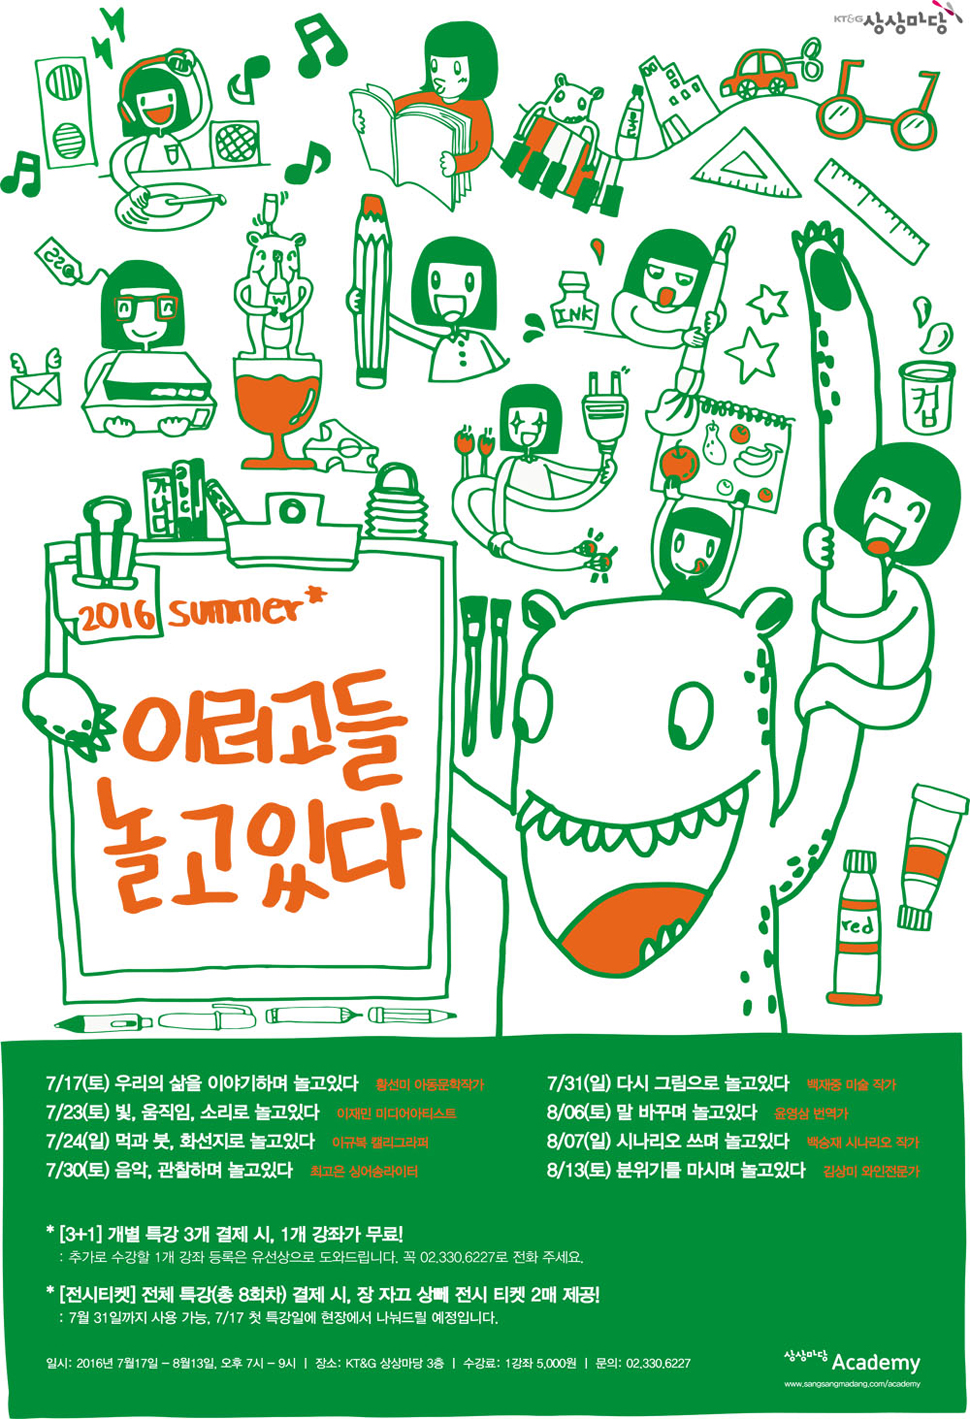 다양한 문화예술의 작가들의 릴레이 특강인 <이러고들 놀고있다 시즌2> 포스터 (사진제공: KT&G 상상마당)